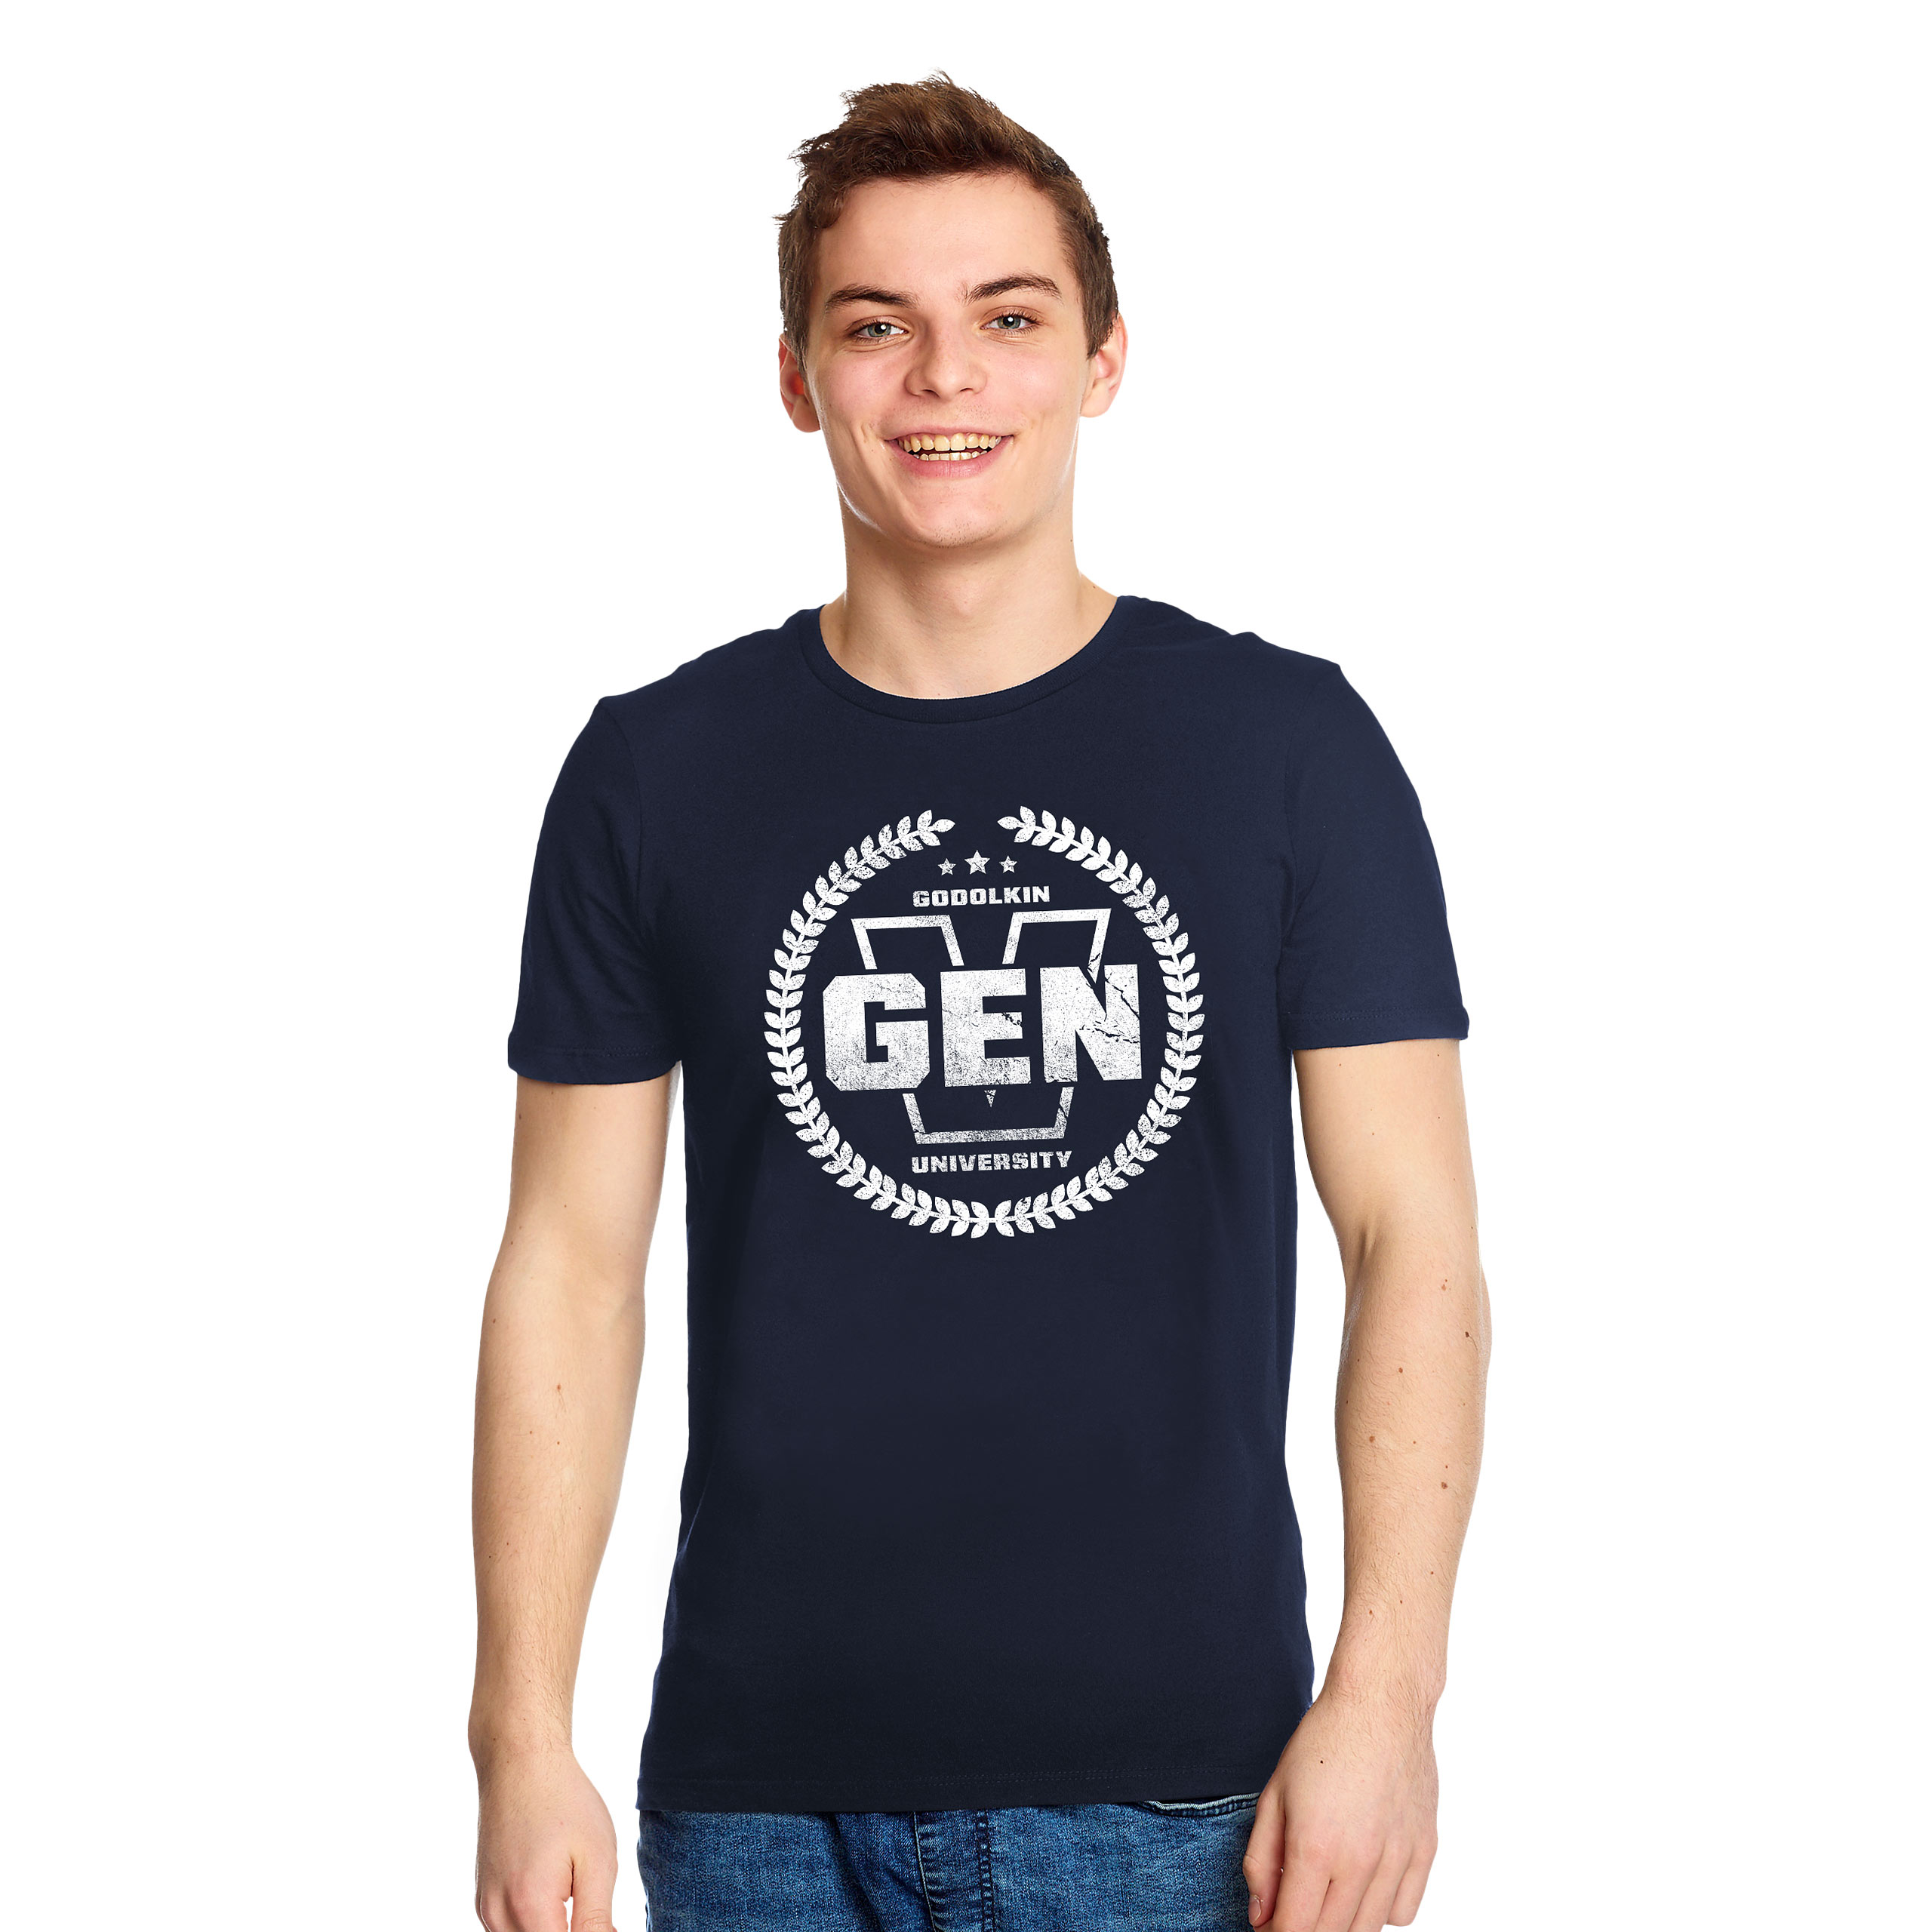 T-shirt de l'université Gen V Godolkin pour les fans de The Boys